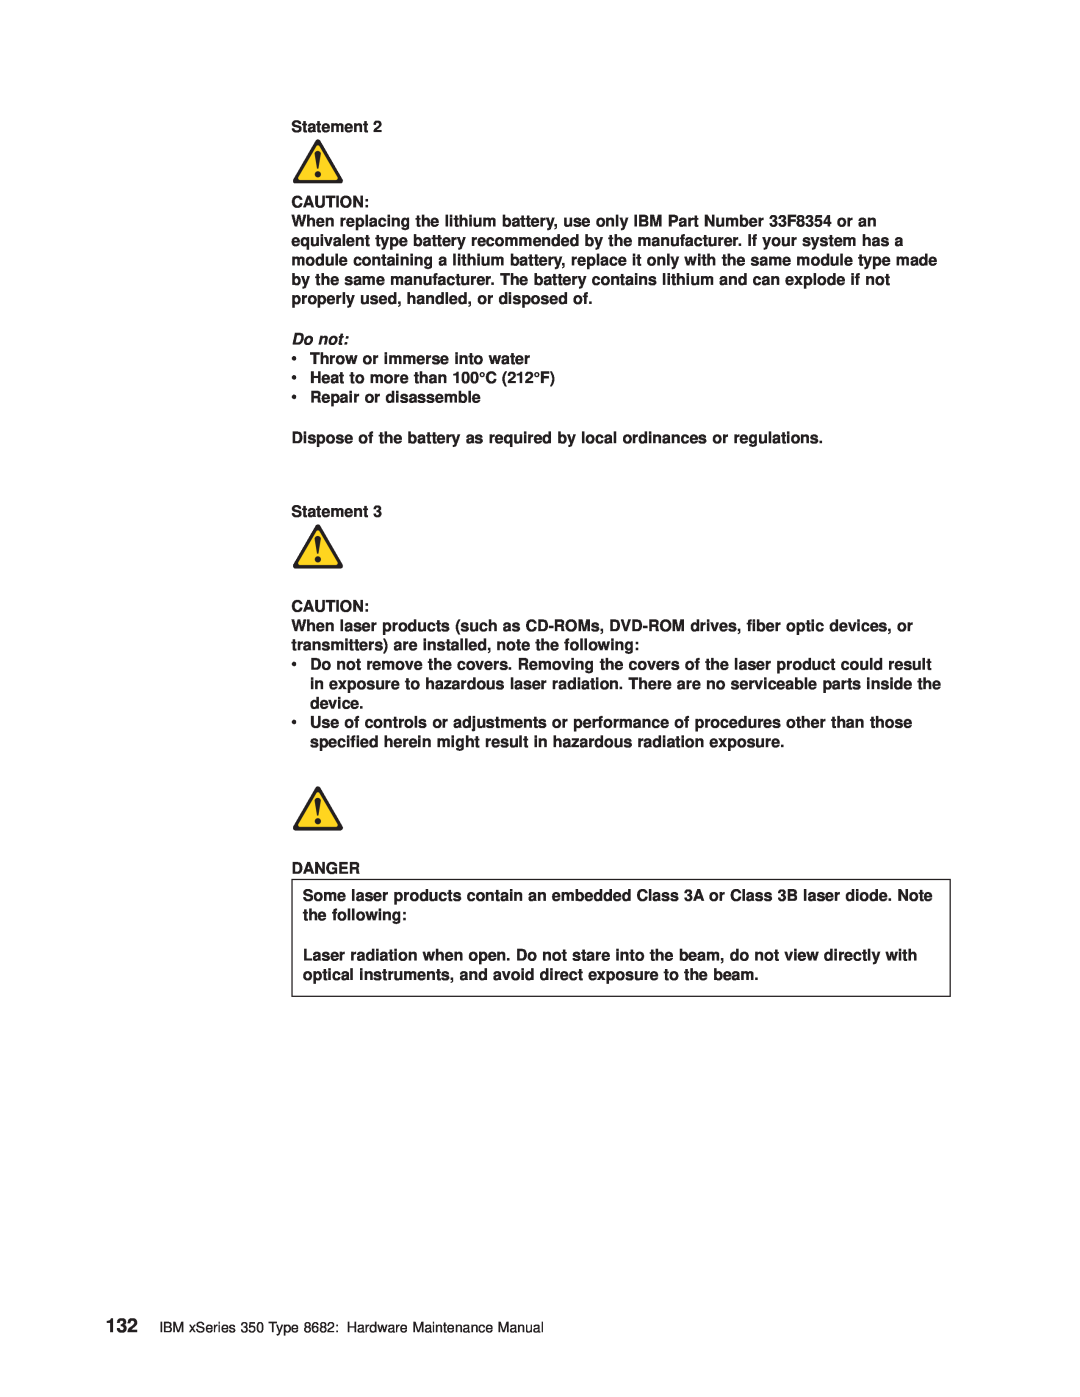 IBM manual Do not, IBM xSeries 350 Type 8682 Hardware Maintenance Manual 